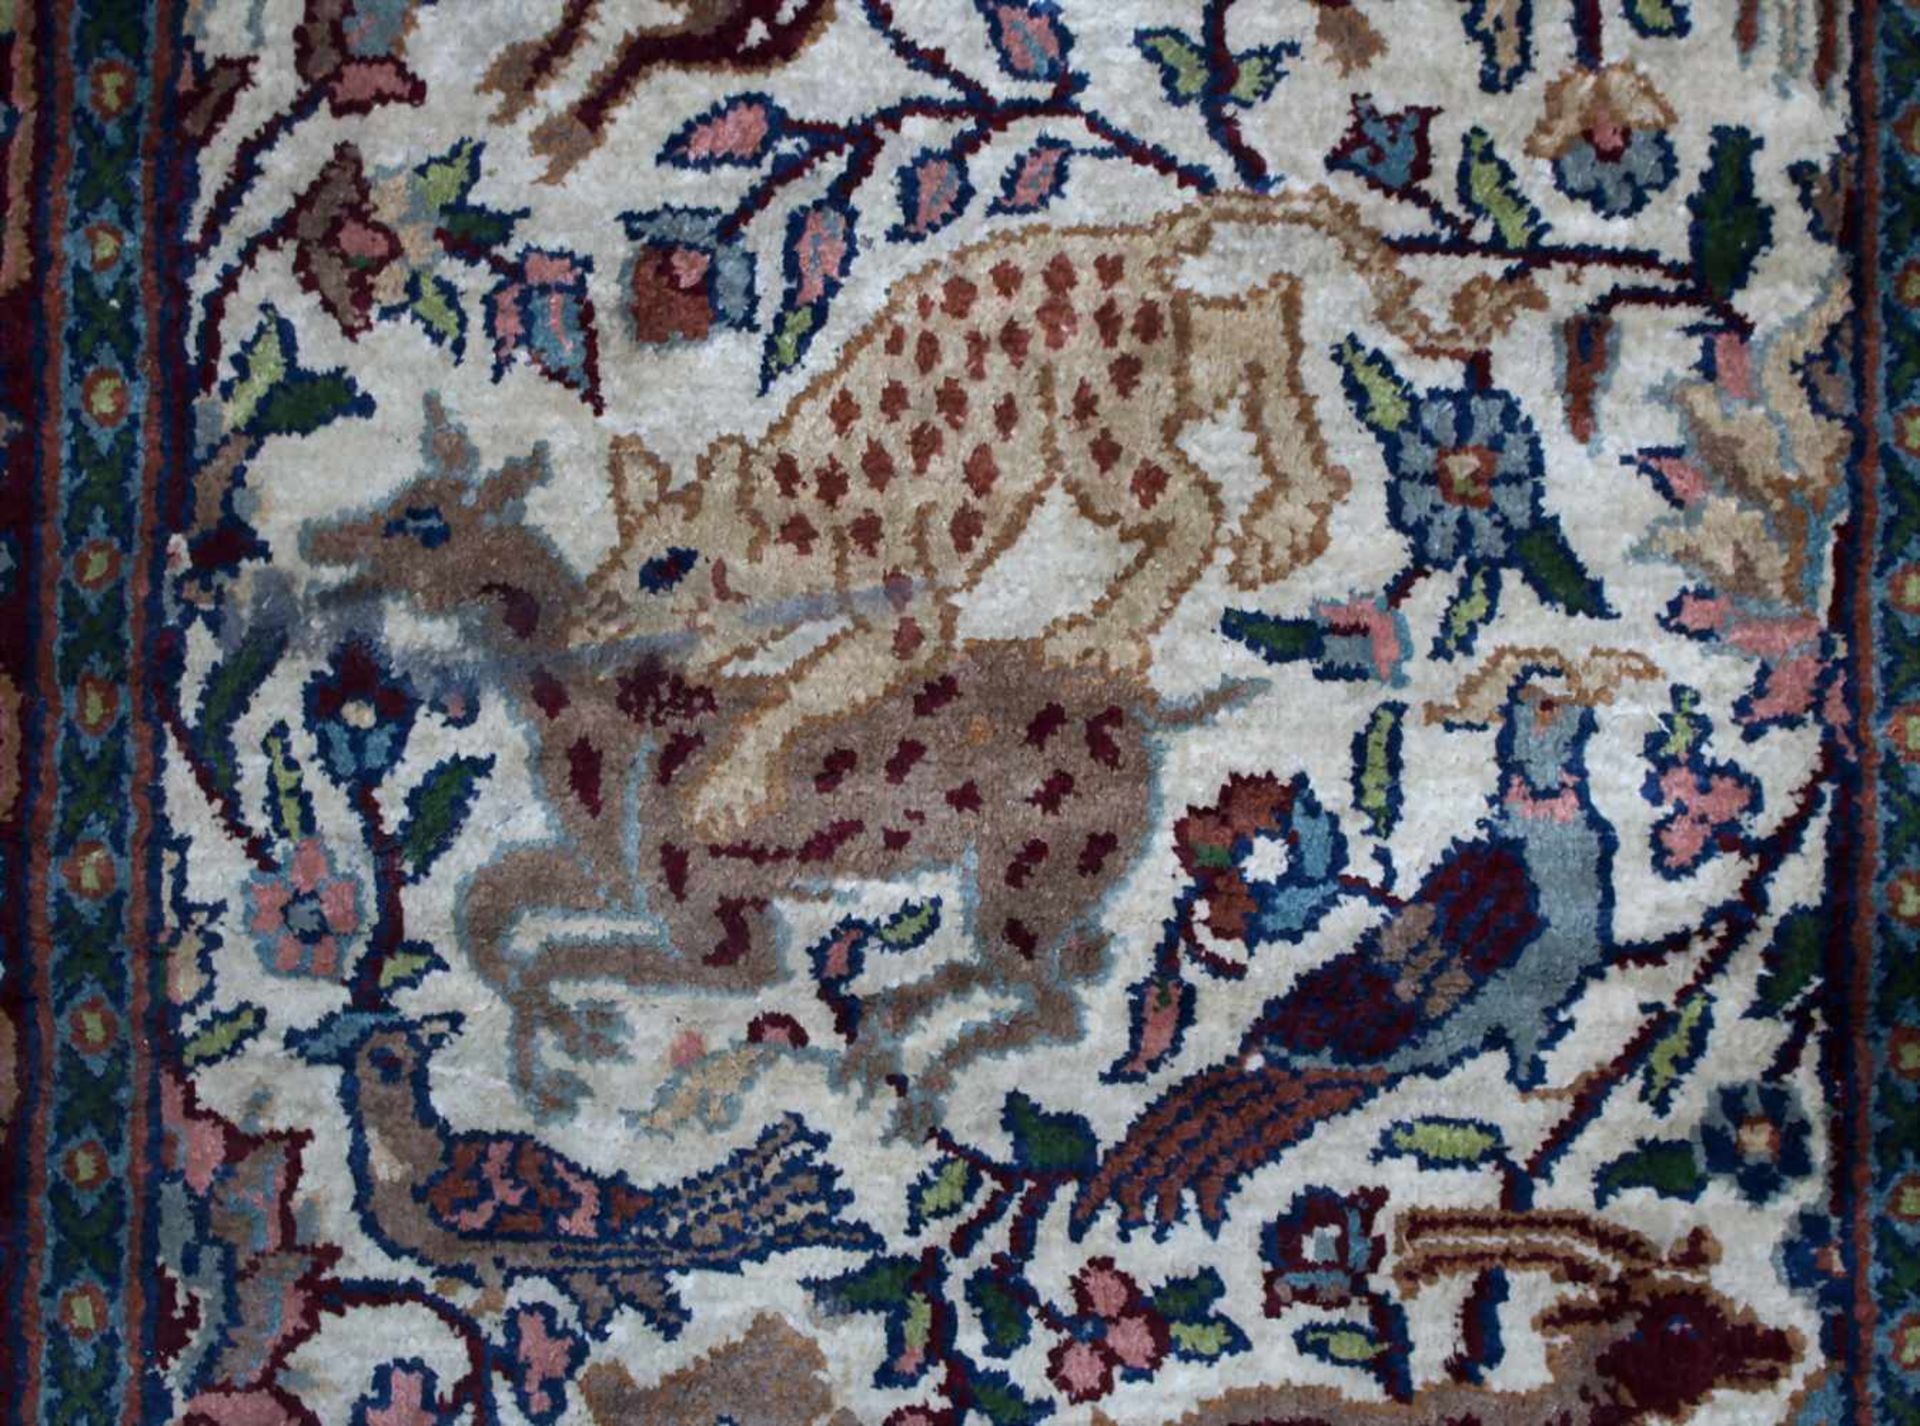 Teppich / Brücke / A carpet, 20. Jh.Material: Kaschmirseide,Dekor: zentrales Medaillon mit Tieren, - Image 2 of 4